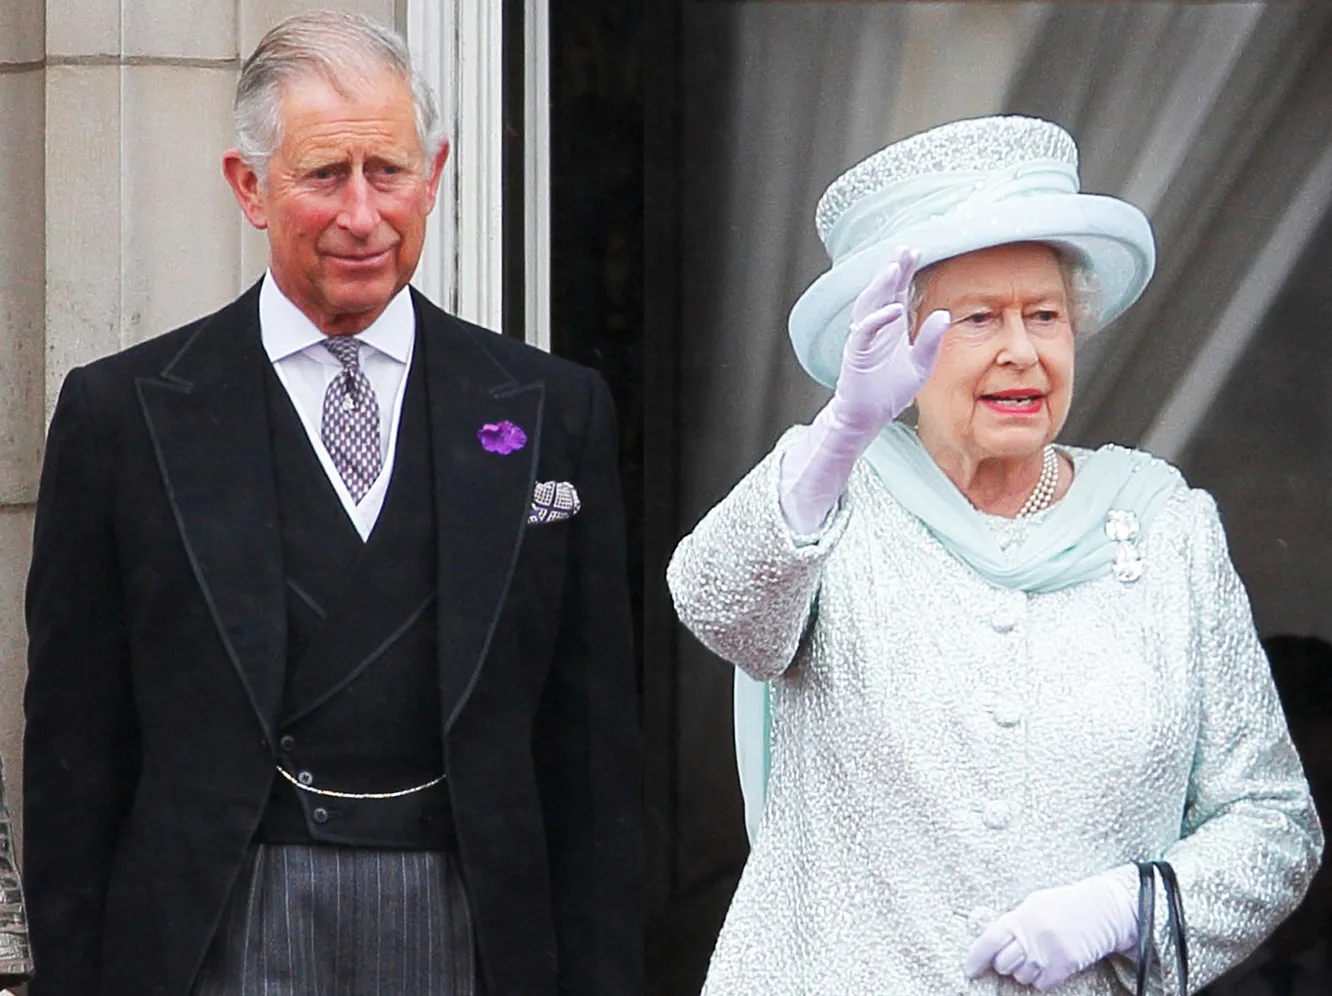 Кейт Міддлтон та принц Вільям після смерті Єлизавети II отримали нові королівські титули